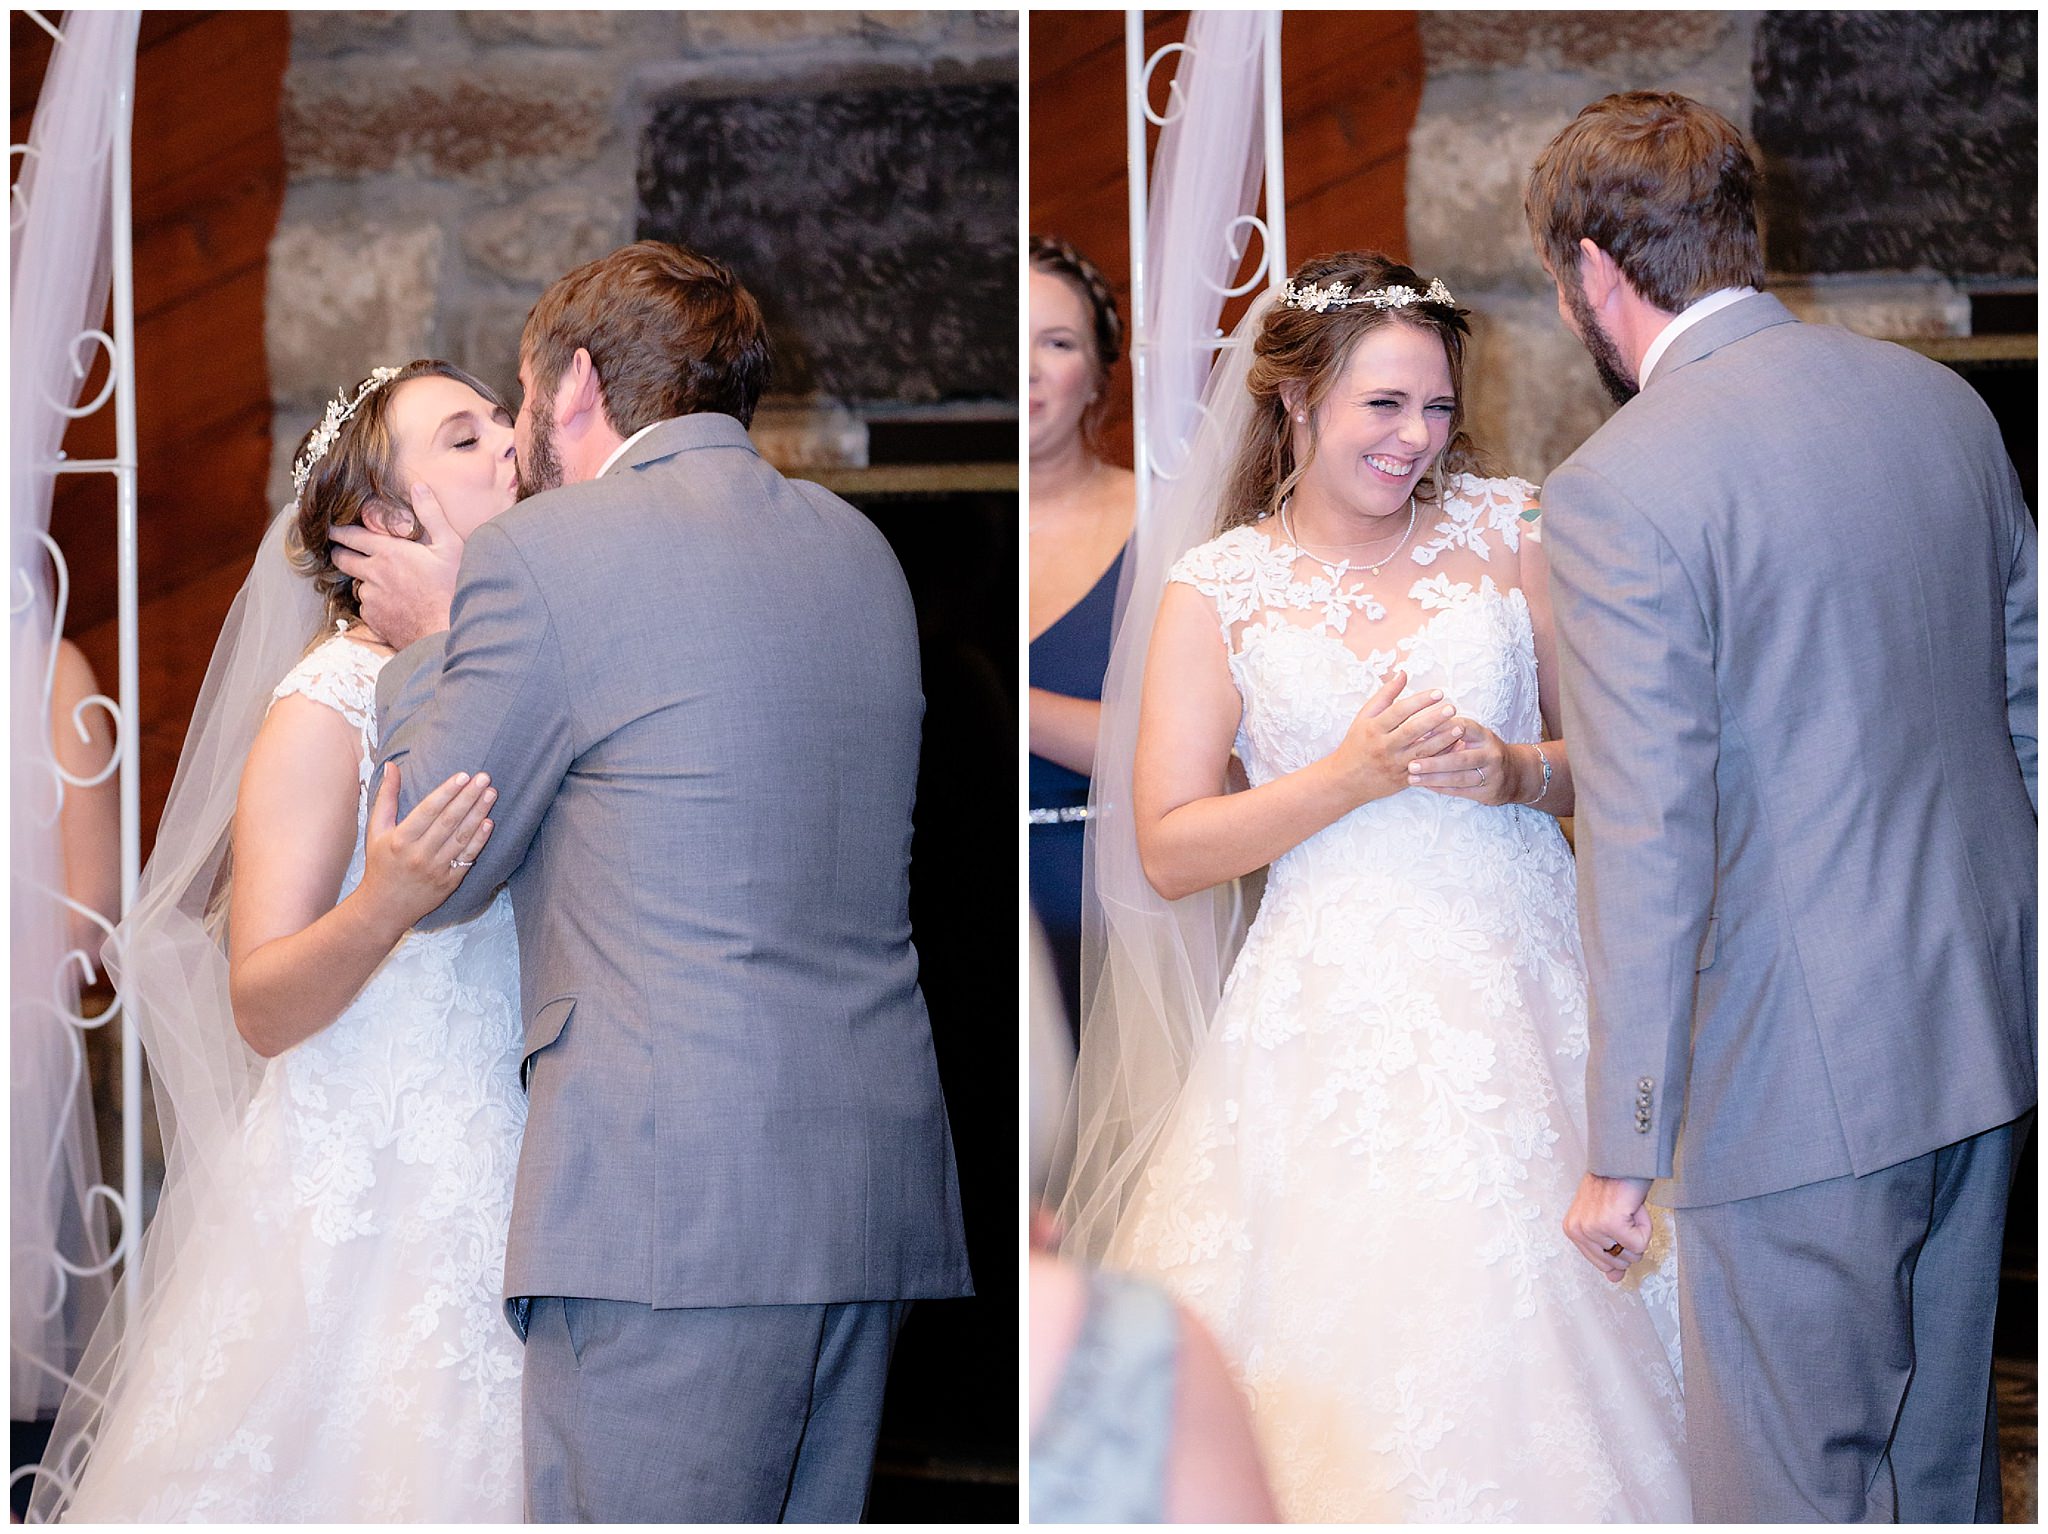 Bride giggles after her first kiss at an Oglebay wedding ceremony